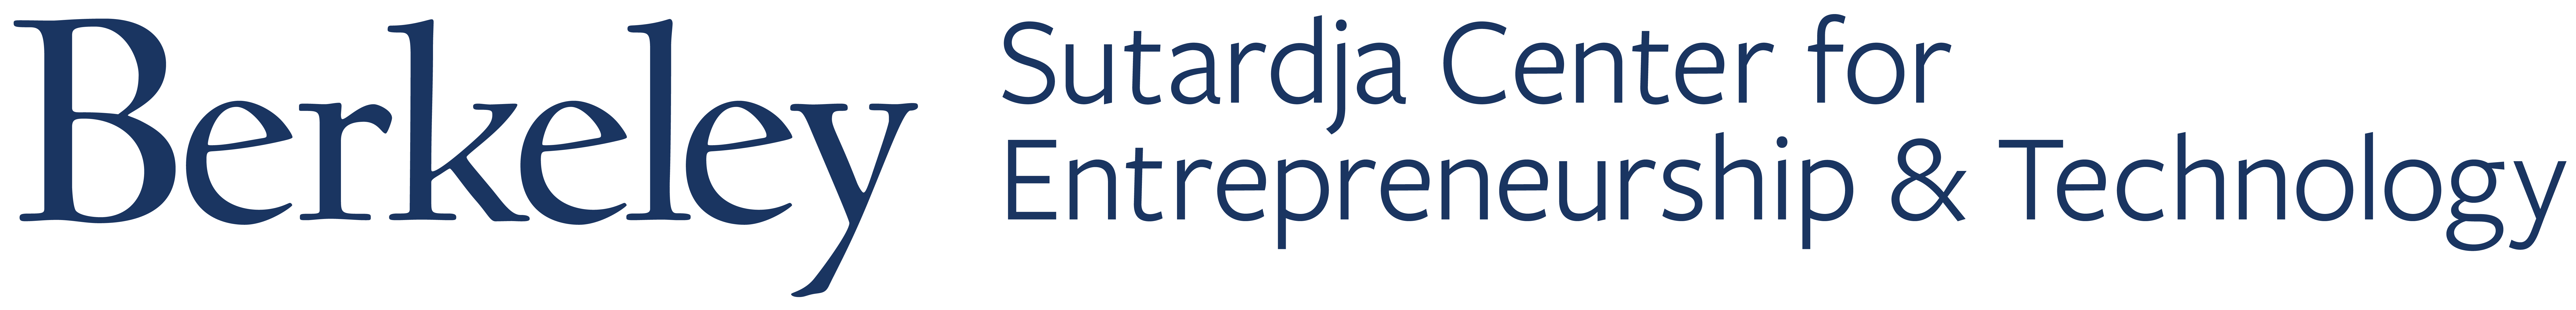 Sutardja Center for Entrepreneurship and Technology logo